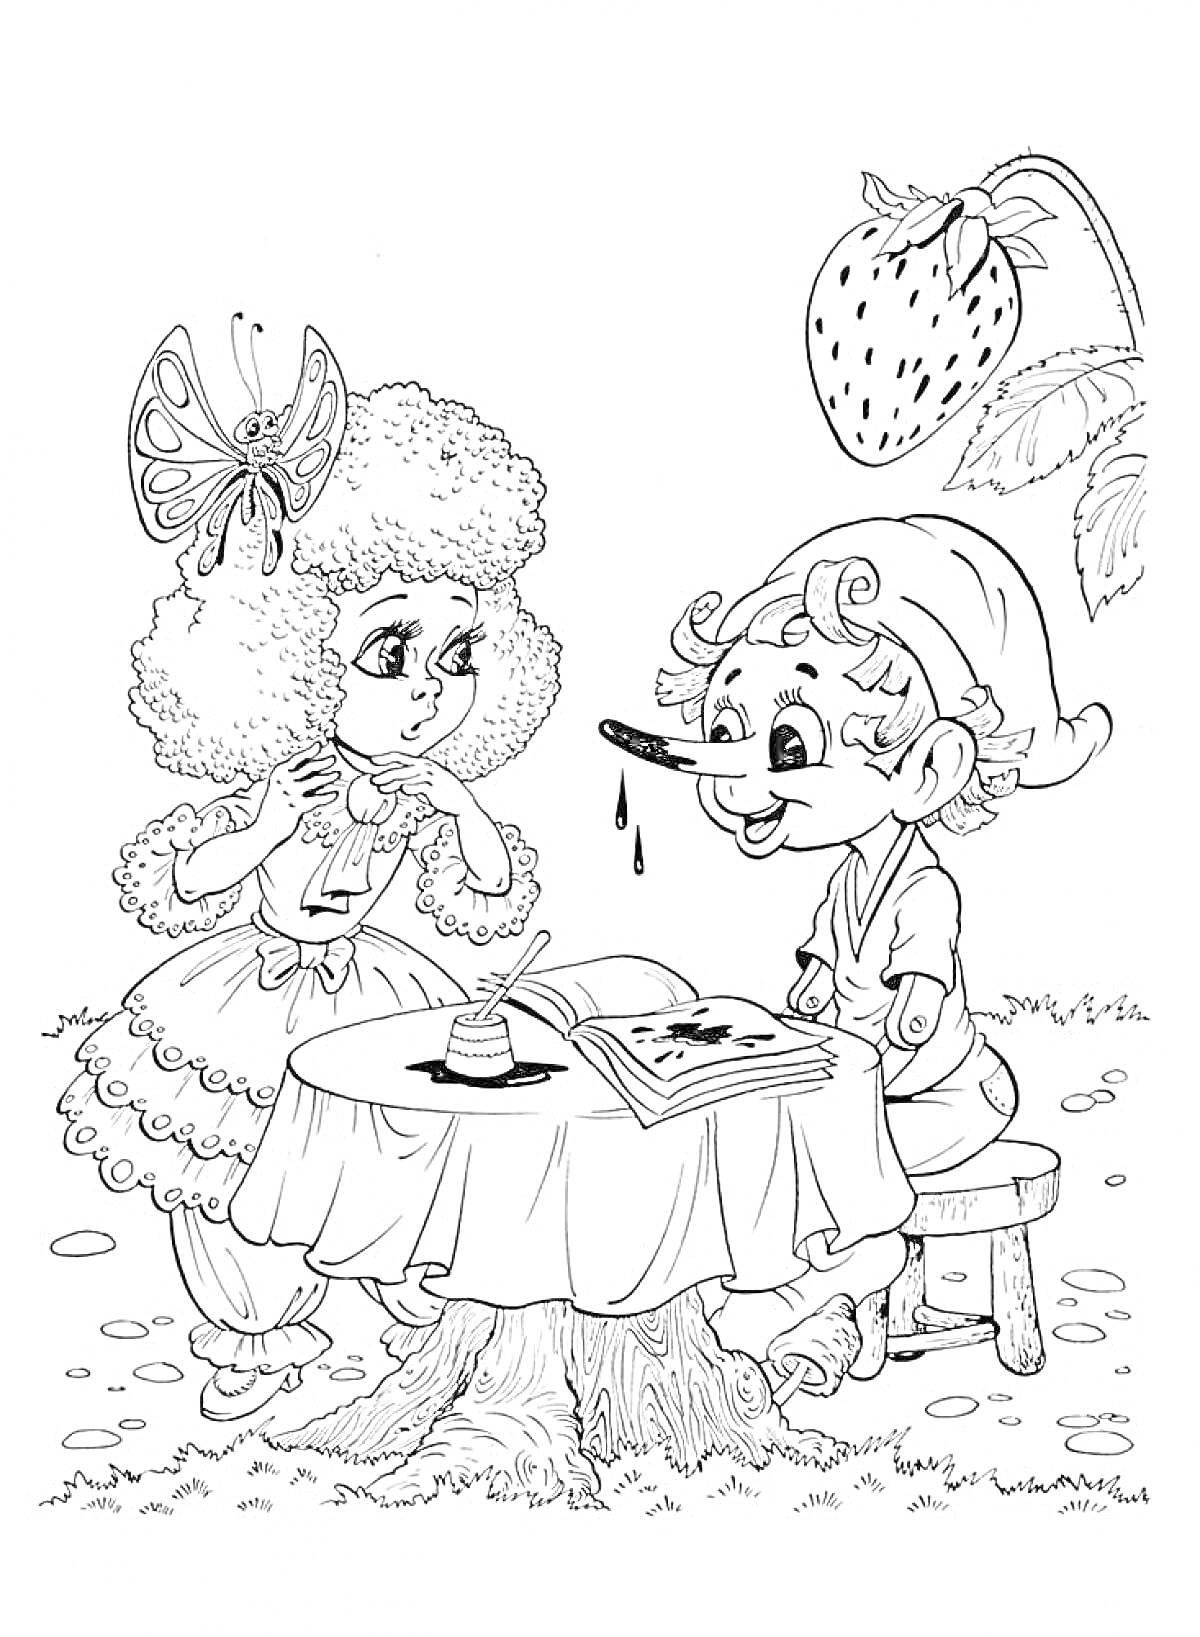 Буратино и девочка с бабочкой на голове за столом с чернильницей под большой клубникой